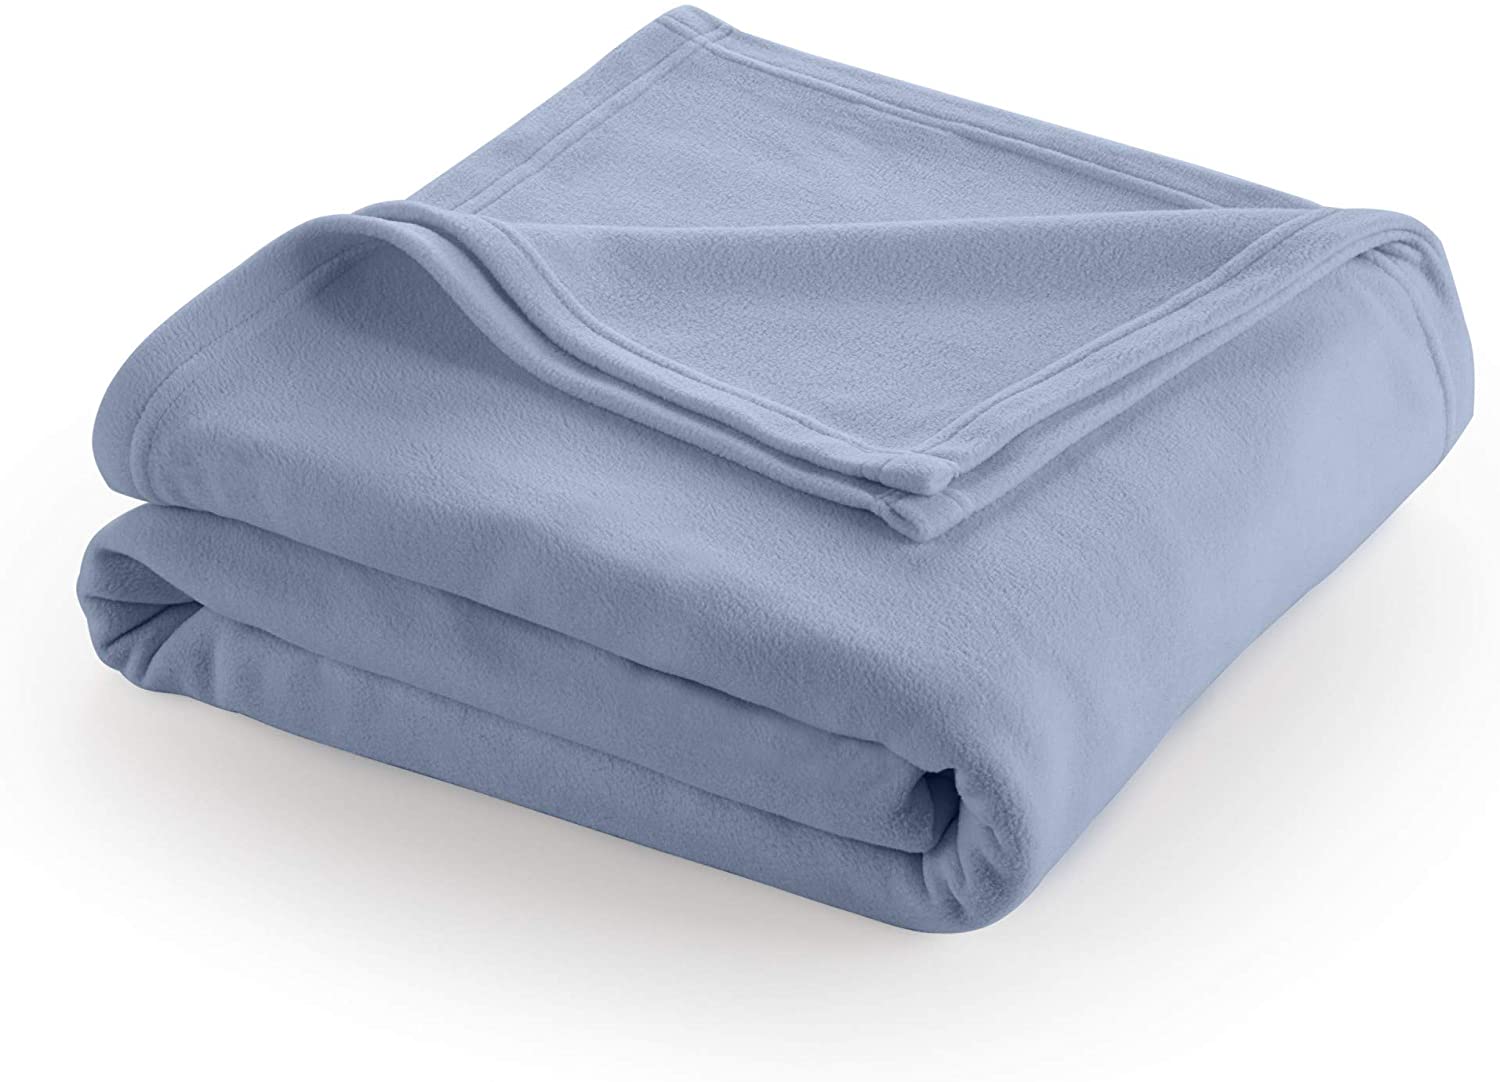 Martex Super Soft Fleece Blanket - Full/Queen, Warm, Lightweight,  Pet-Friendly